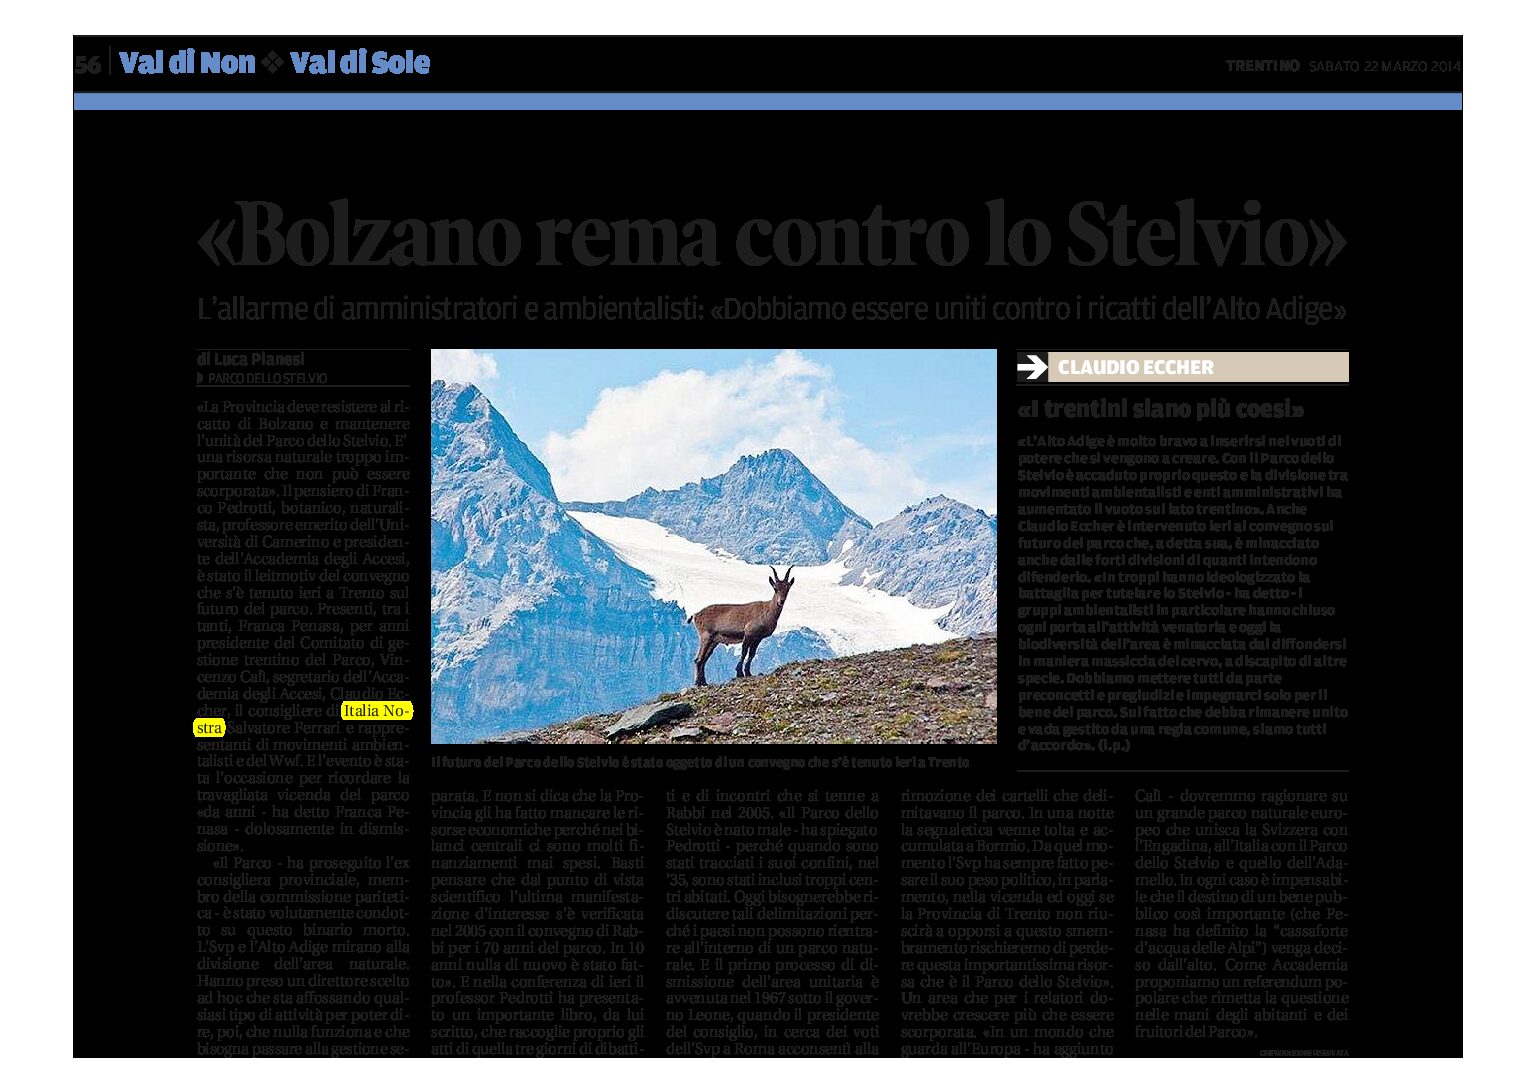 “Bolzano rema contro lo Stelvio”, allarme di amministratori e ambientalisti